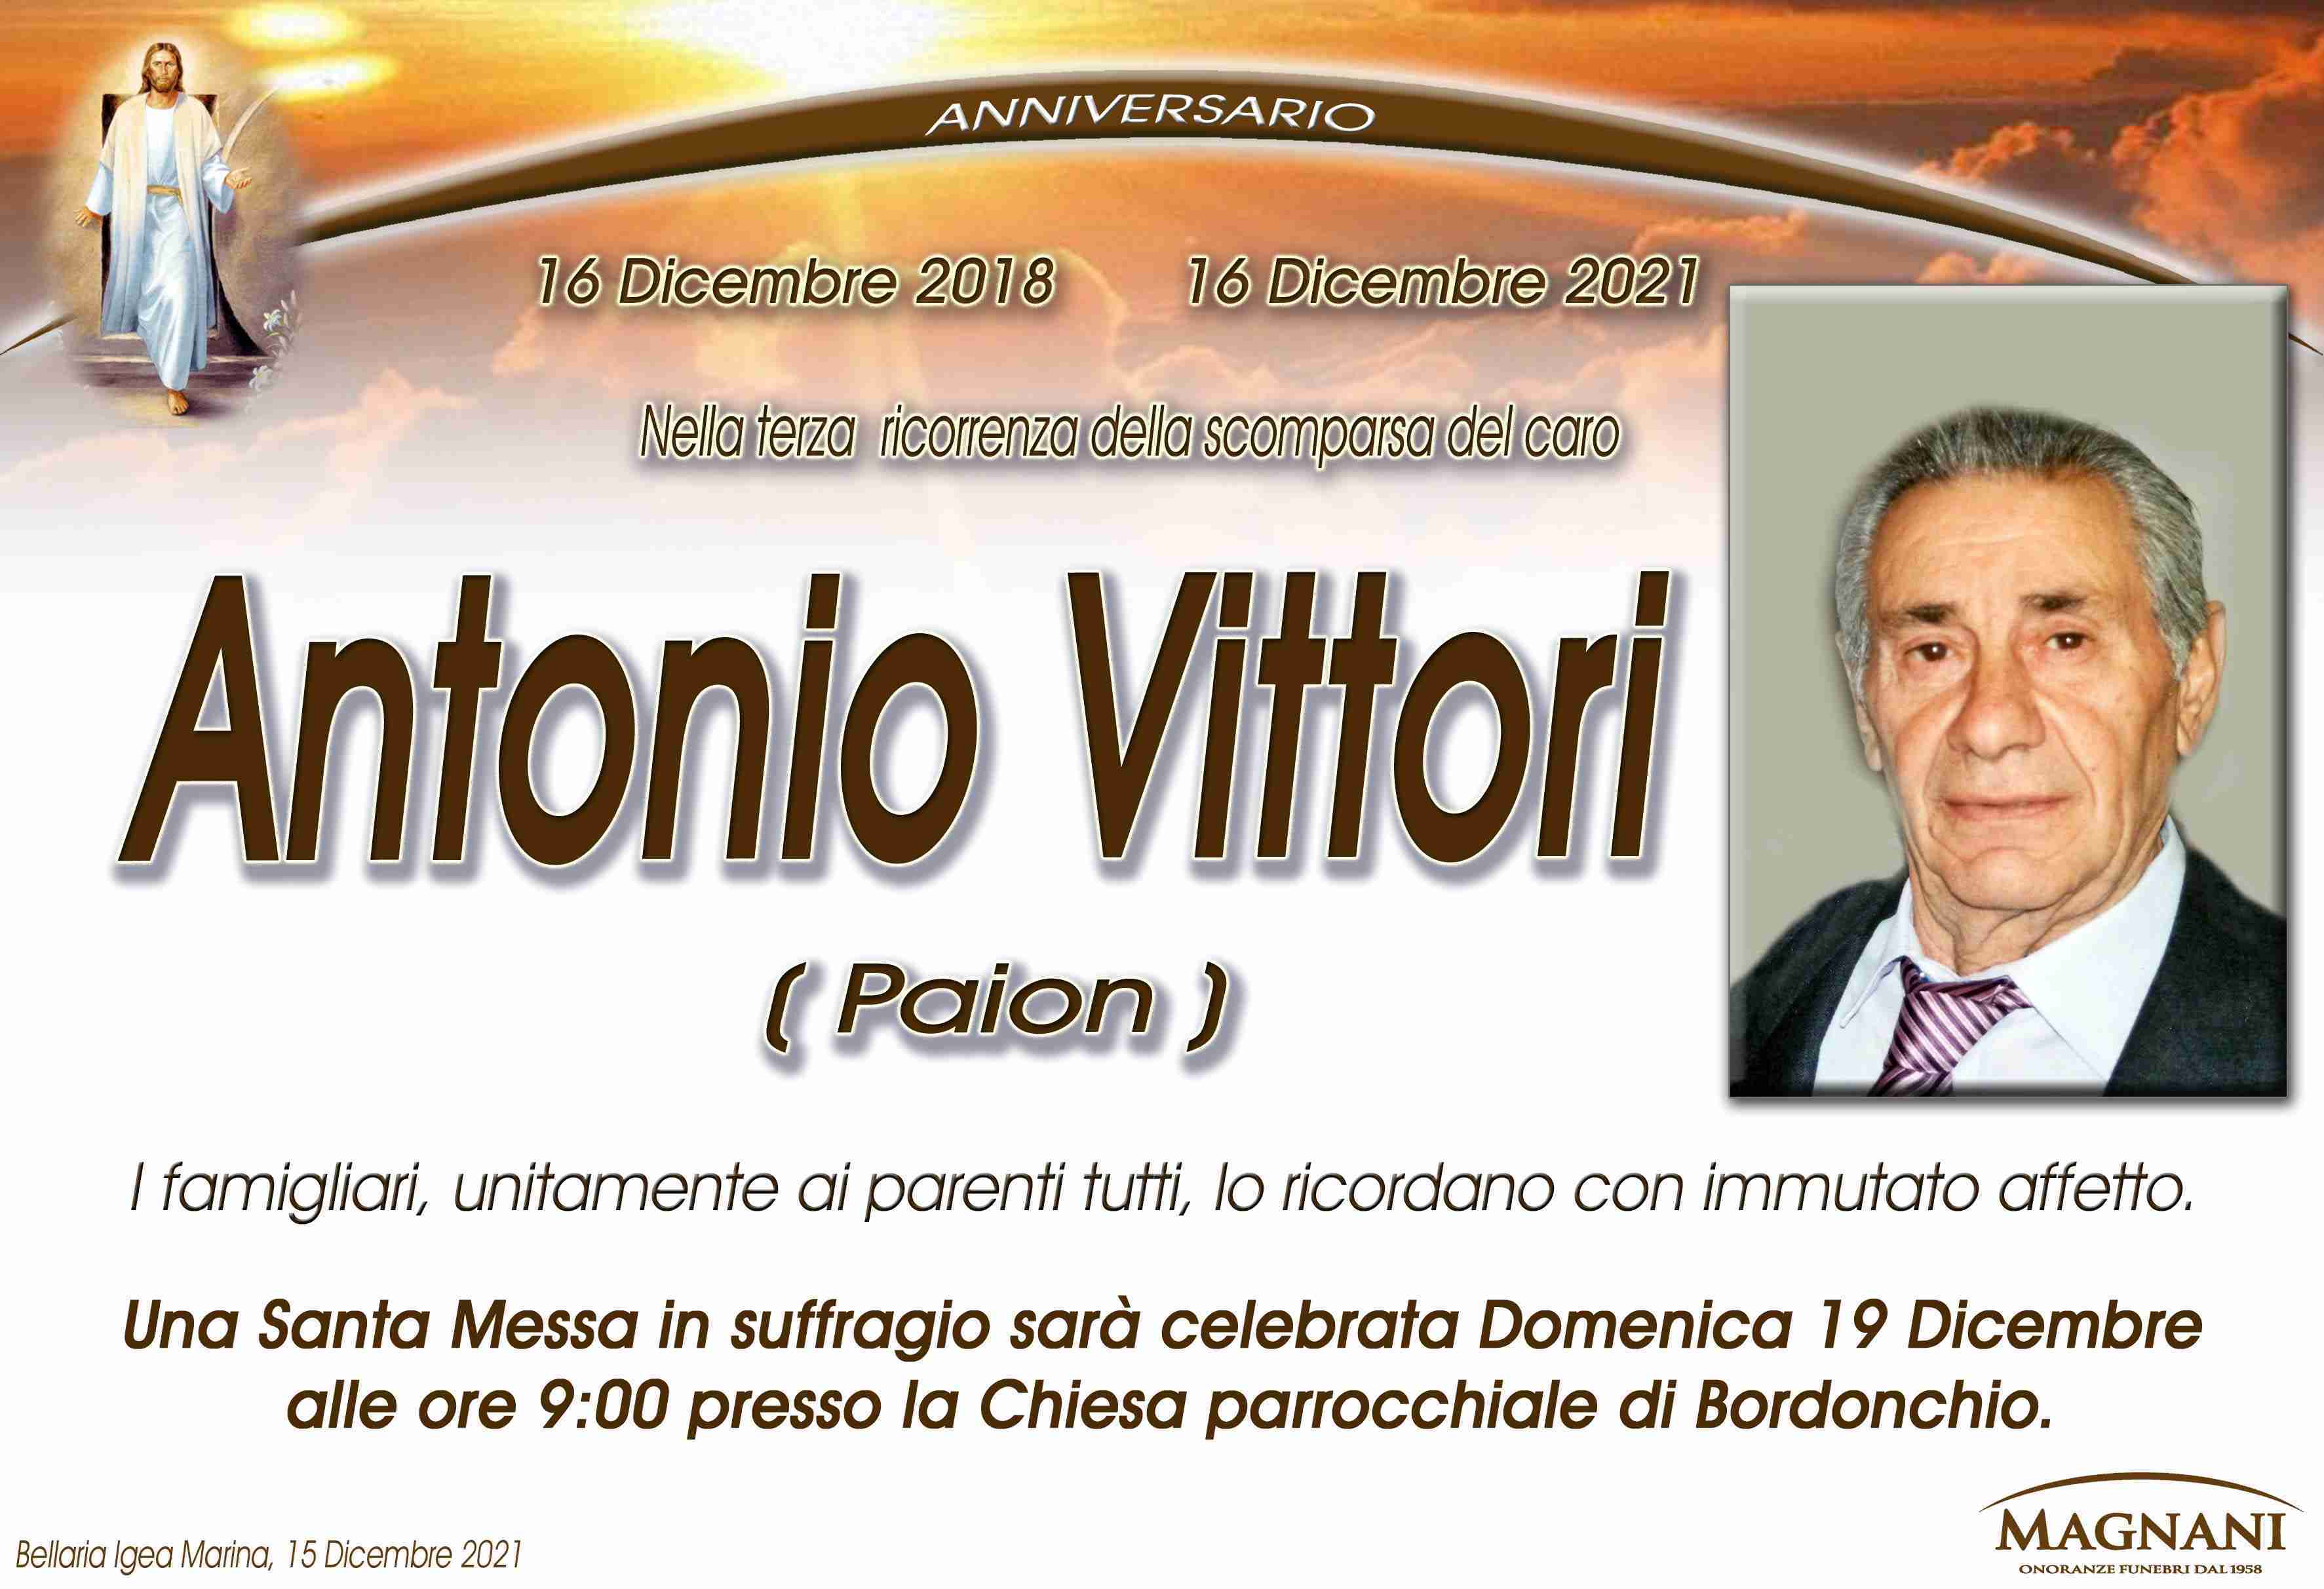 Antonio Vittori